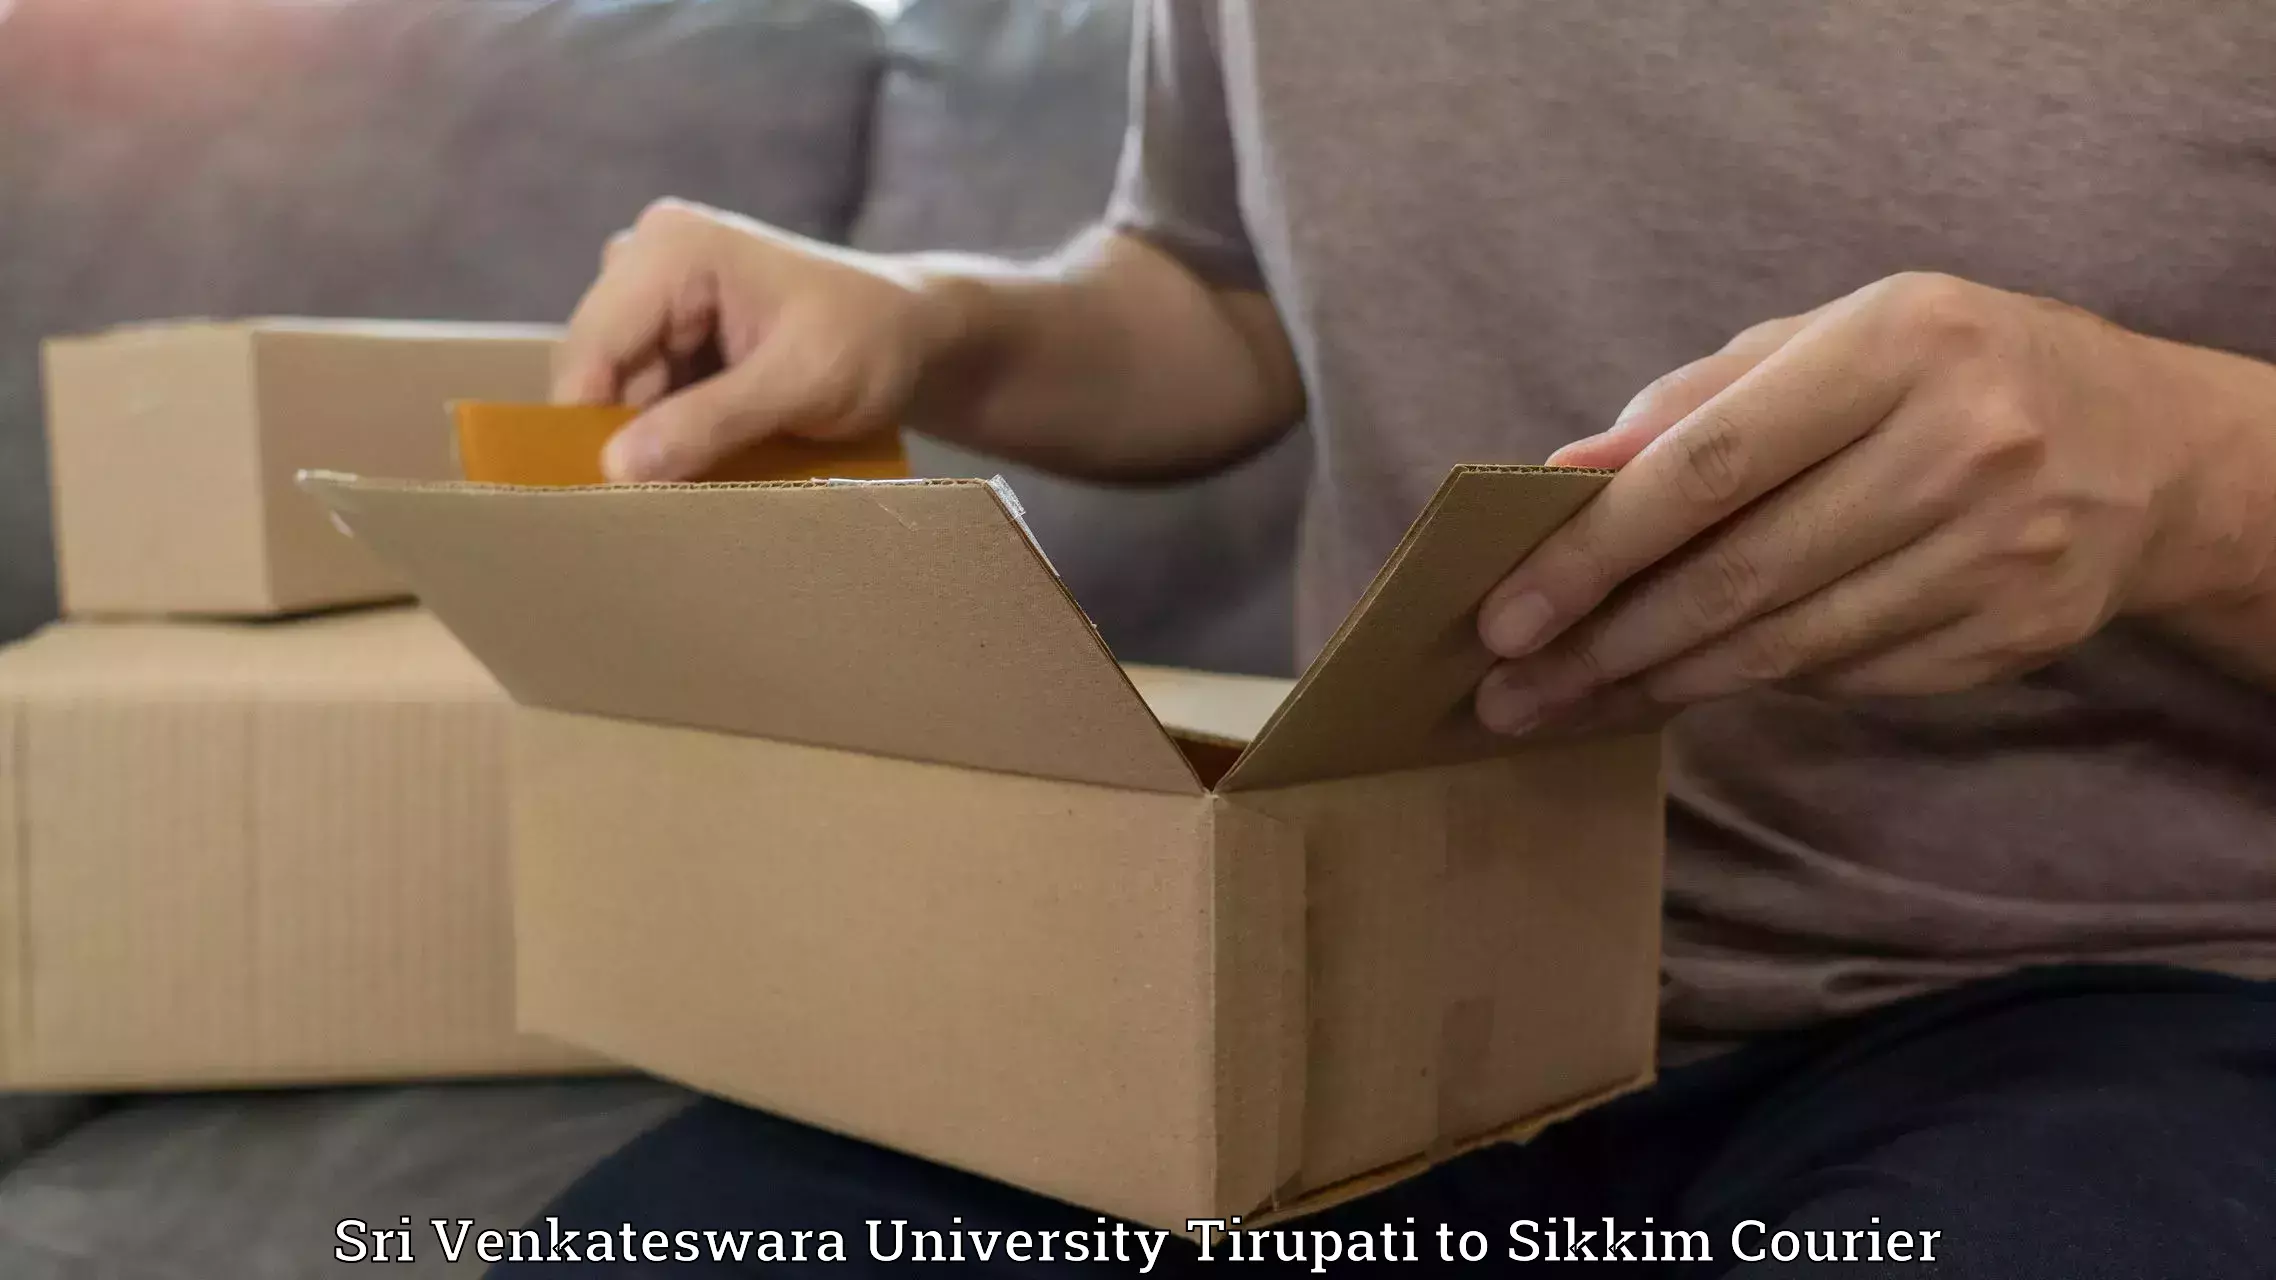 Fast delivery service Sri Venkateswara University Tirupati to Rangpo